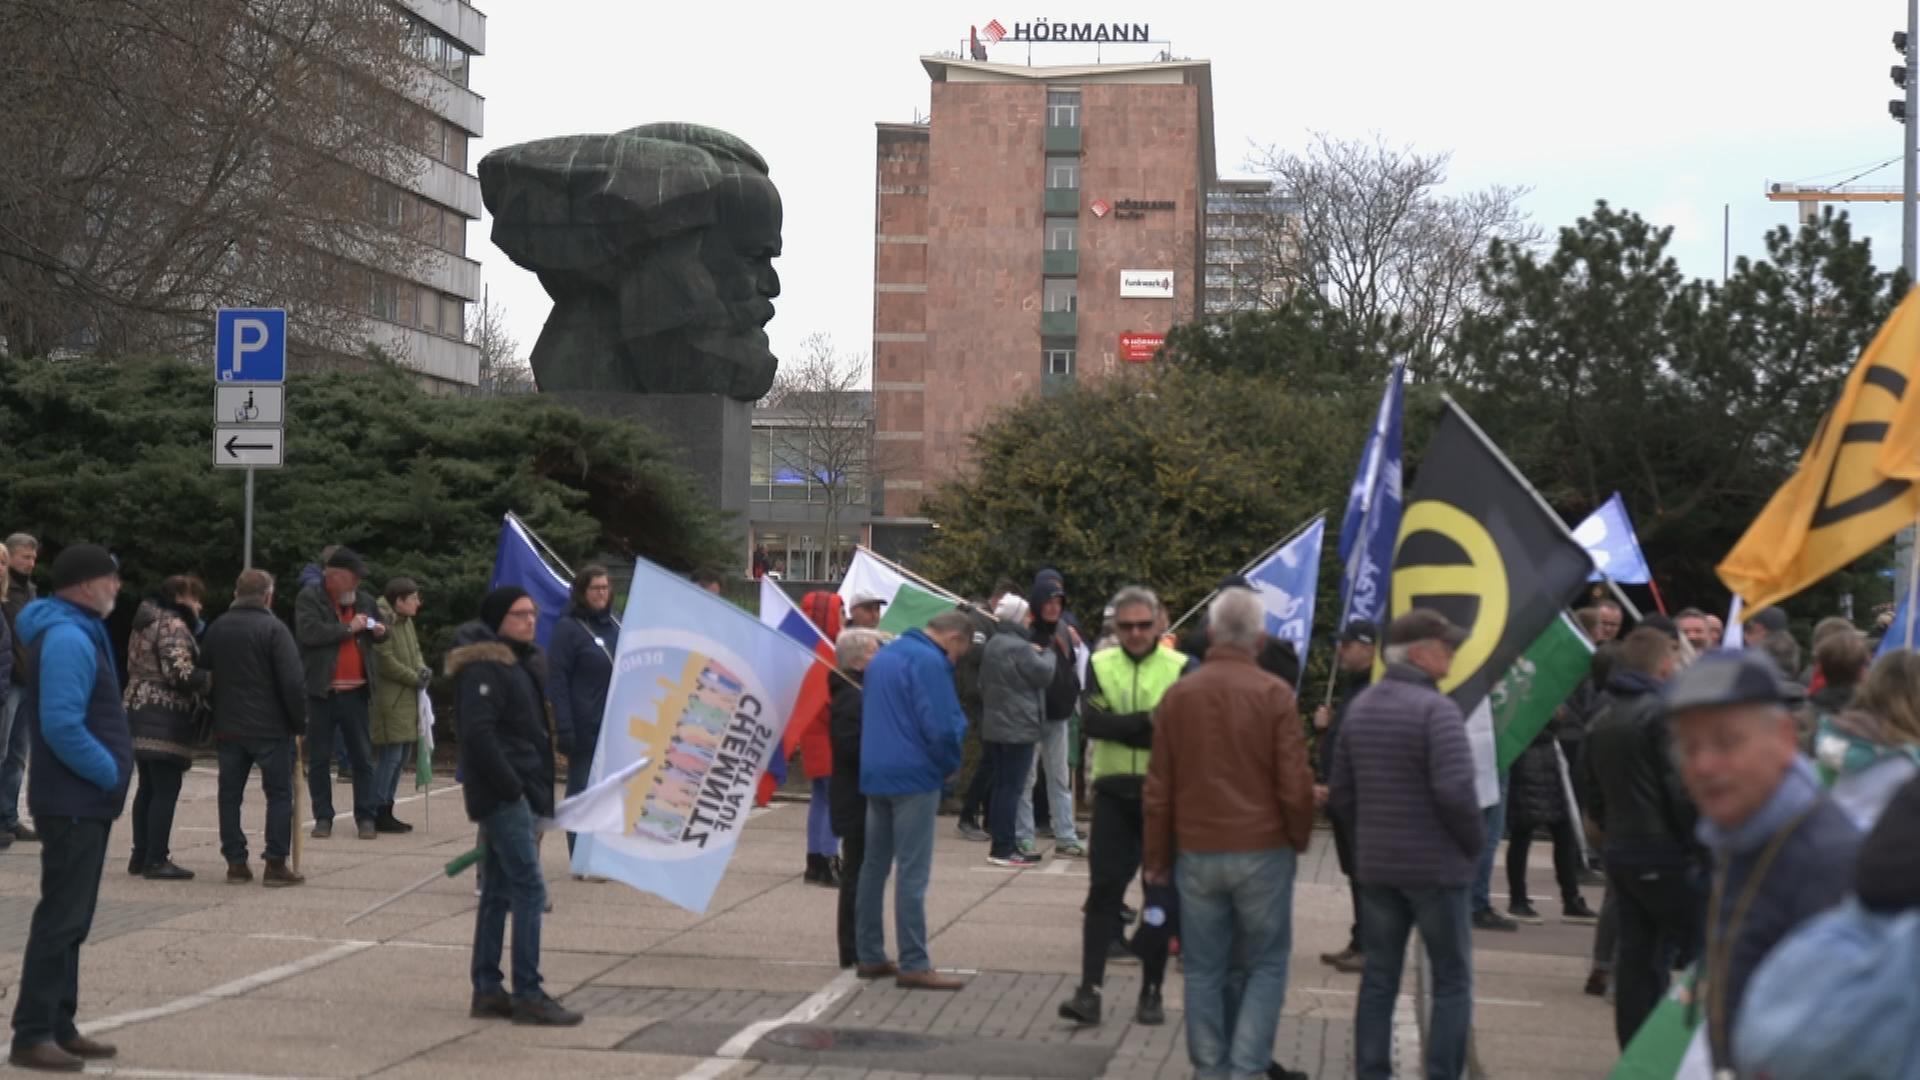 Auf dem Bild ist in Chemnitz ein fremdenfeindlicher Protest zu sehen.